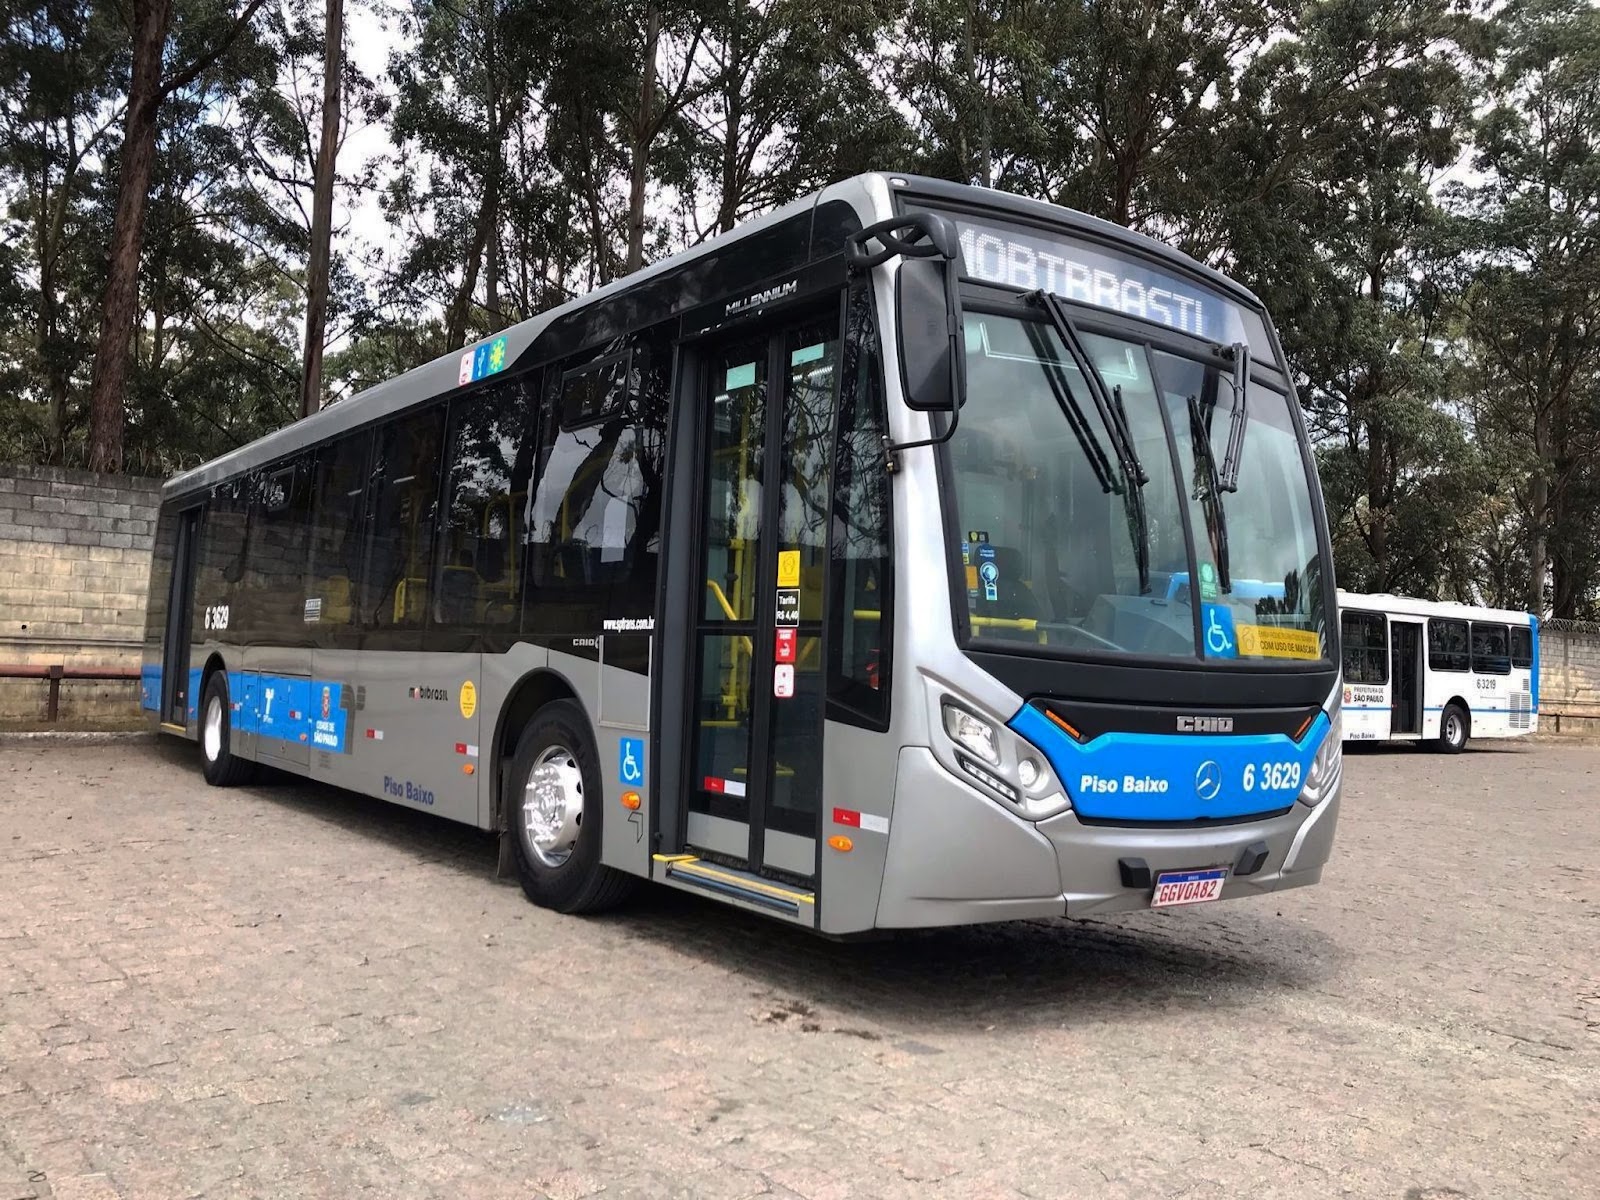 Ônibus da frota da MobiBrasil da operação em São Paulo, onde a operadora transporta 10,8 milhões de passageiros por mês no sistema SPTrans, o maior sistema de ônibus da América Latina.